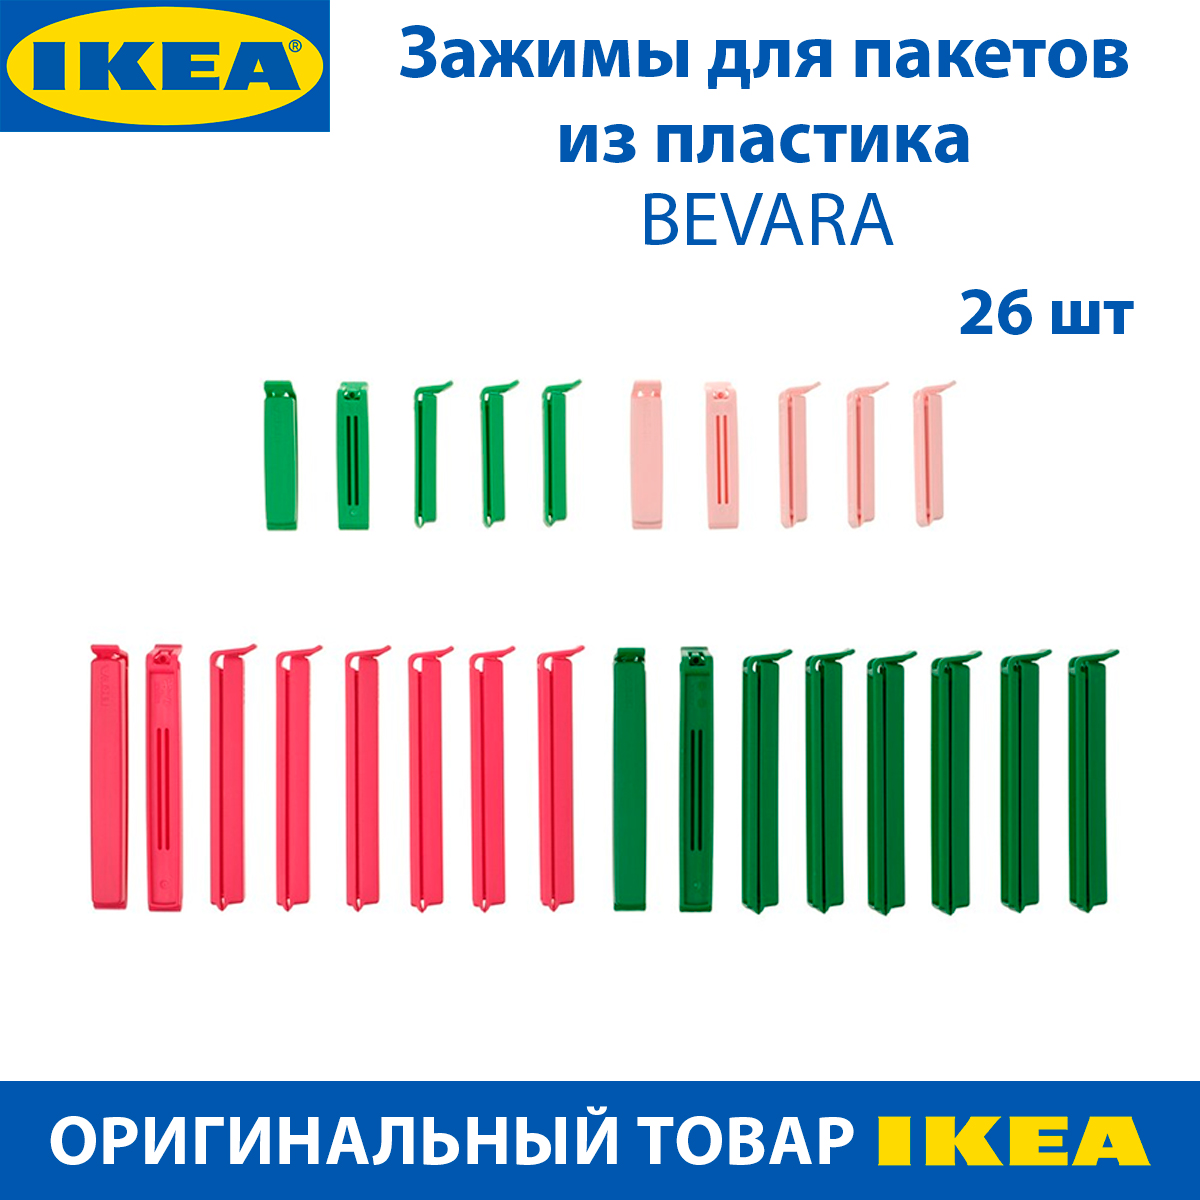 Зажим для пакета IKEA BEVARA пластиковый, 26 шт в наборе